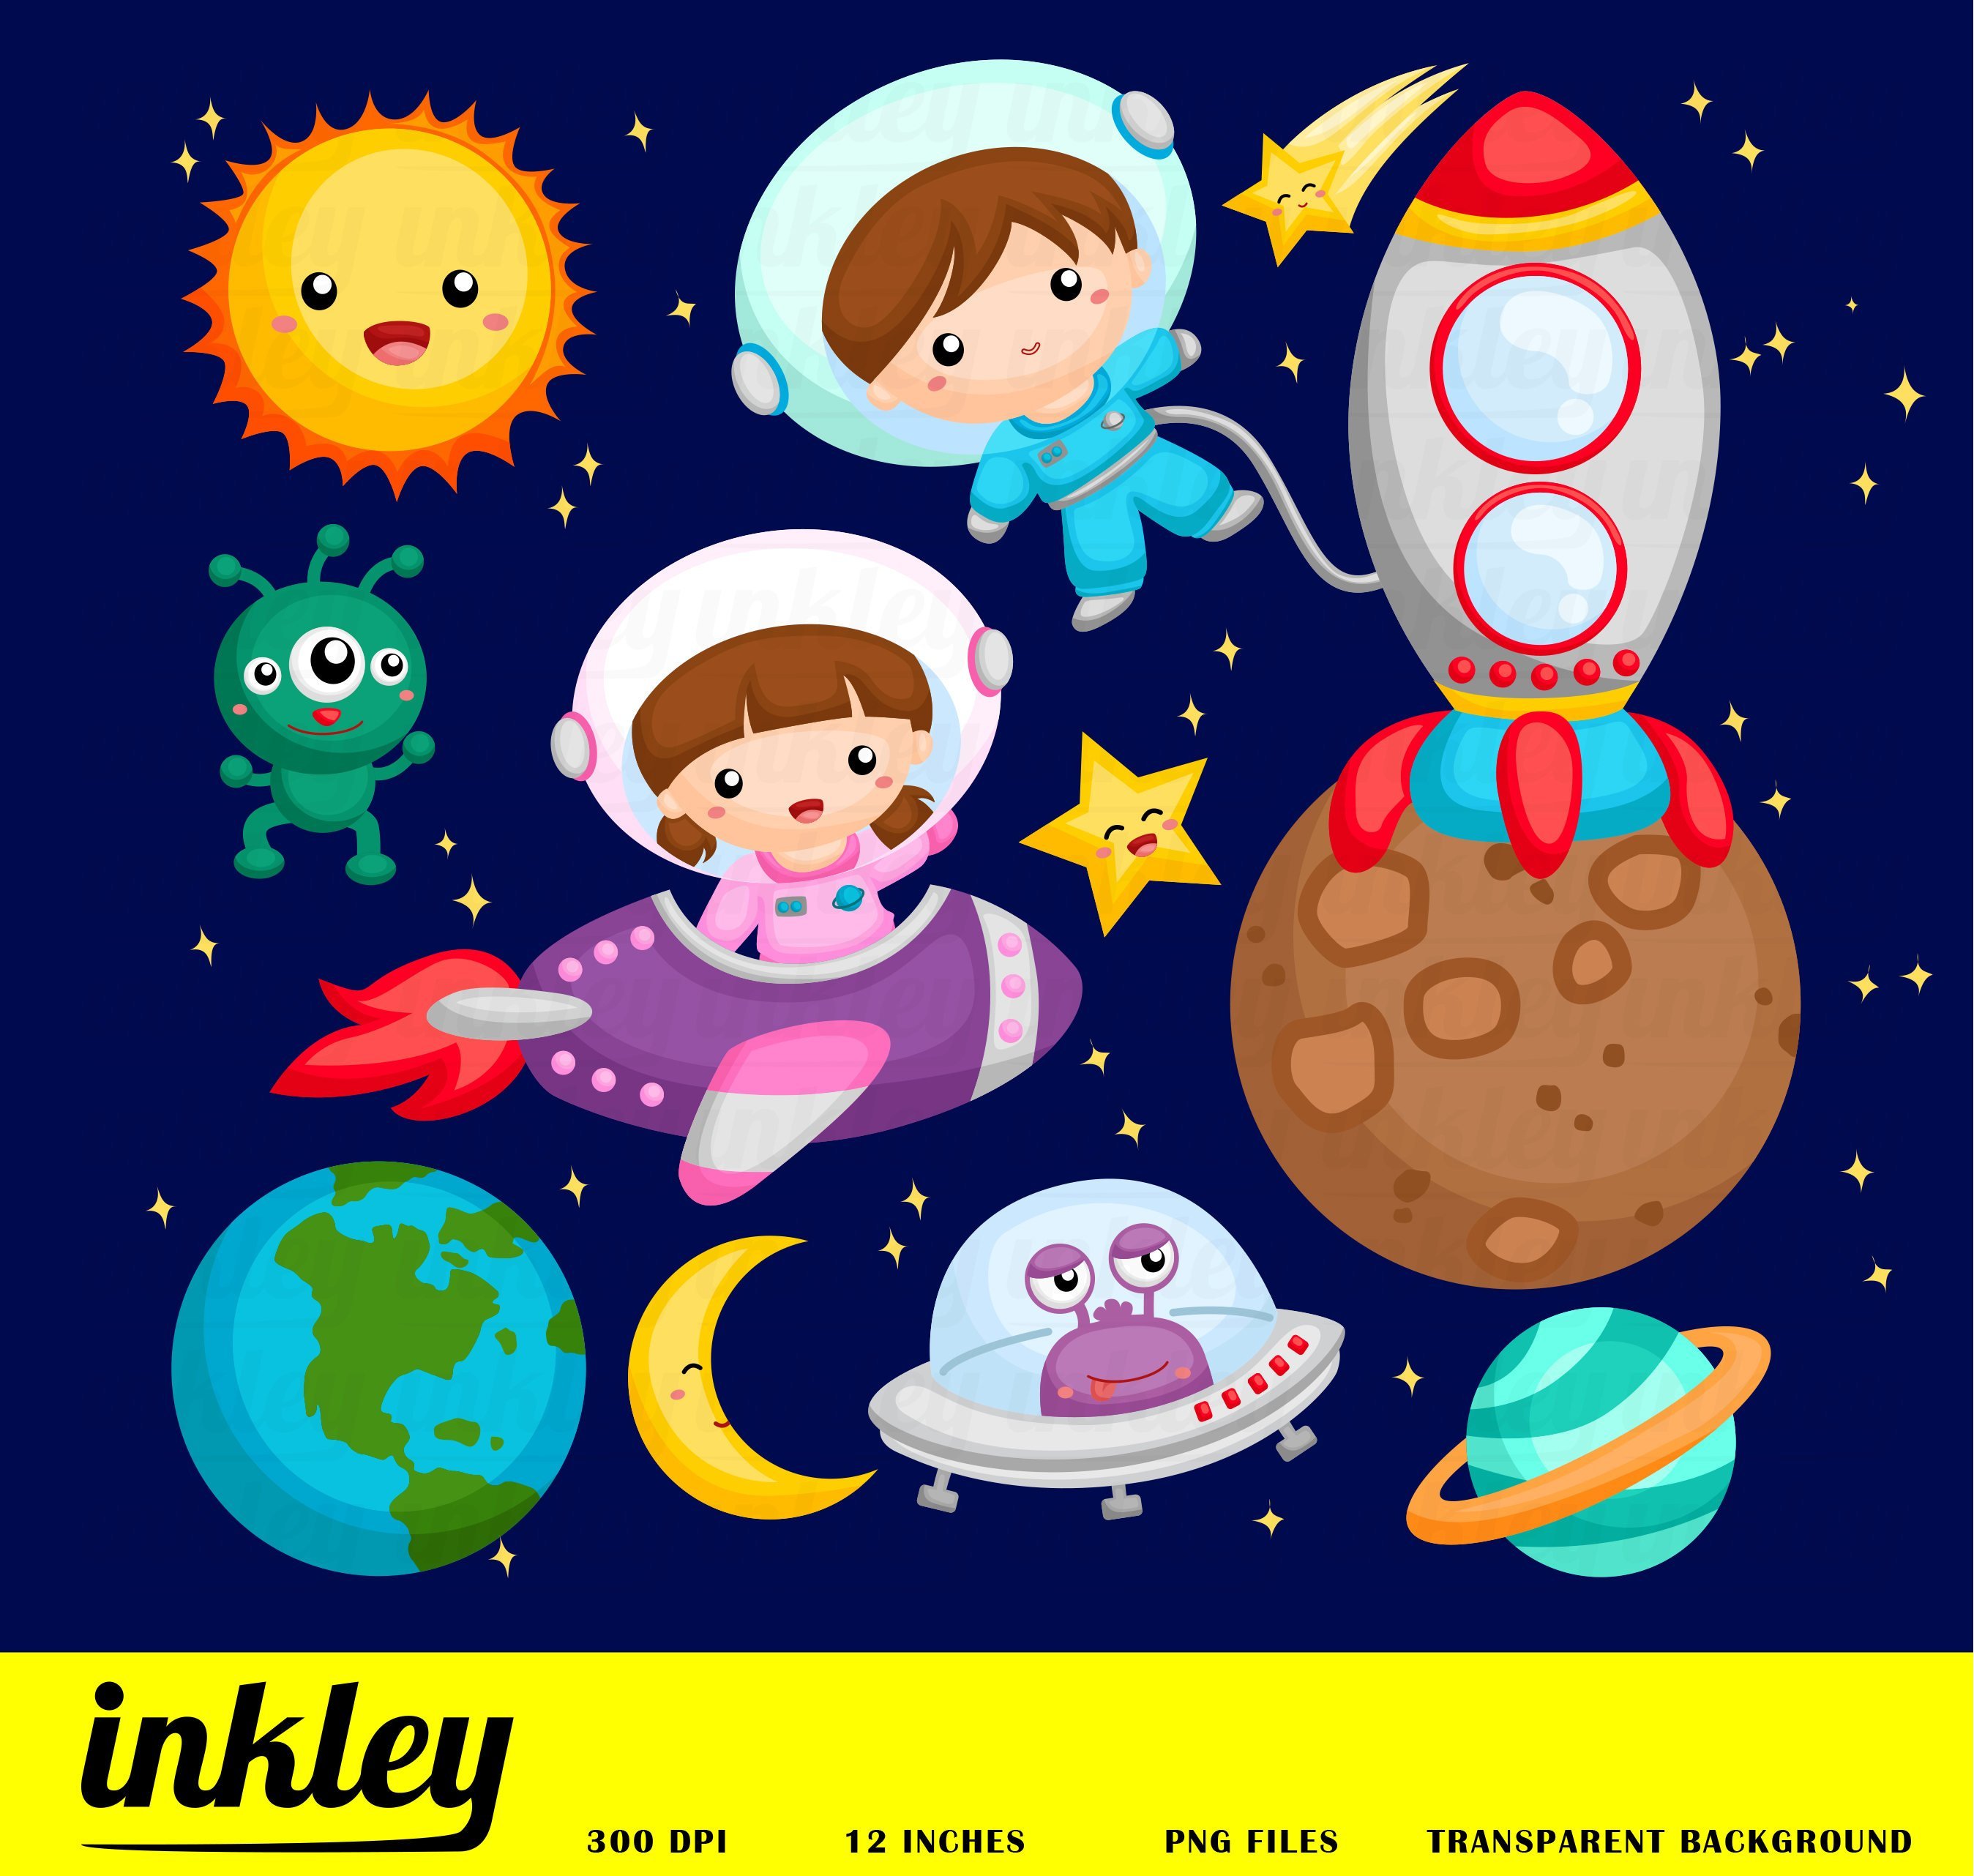 Космос картинки для детского сада. Космос для дошкольников. Космос иллюстрации для детей. Детям о космосе. Космос картинки для детей.